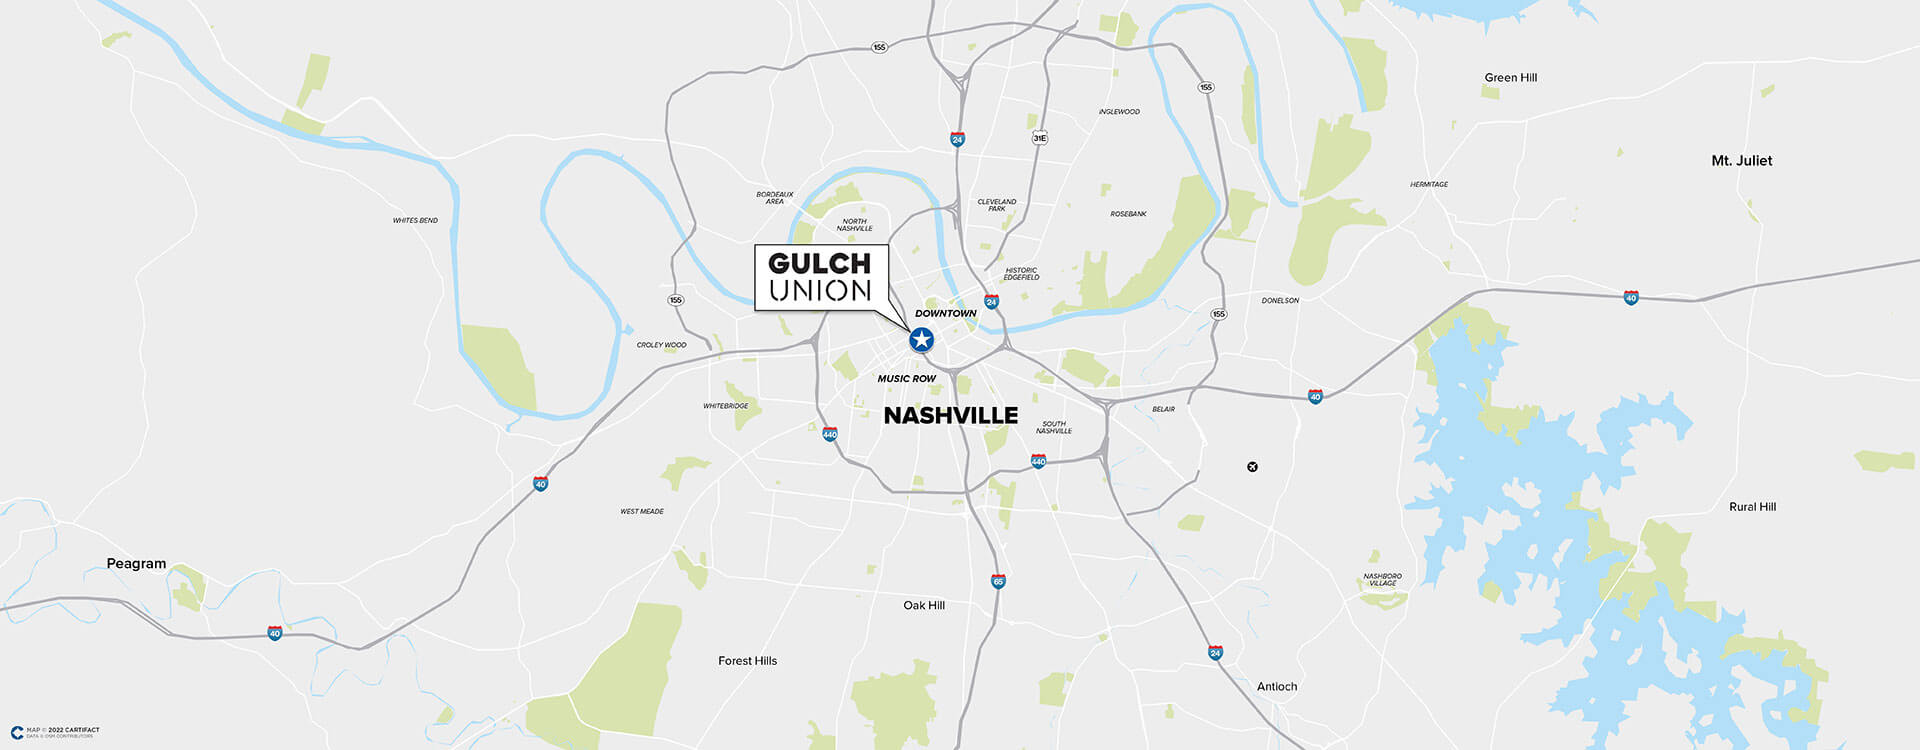 Gulch Union location map